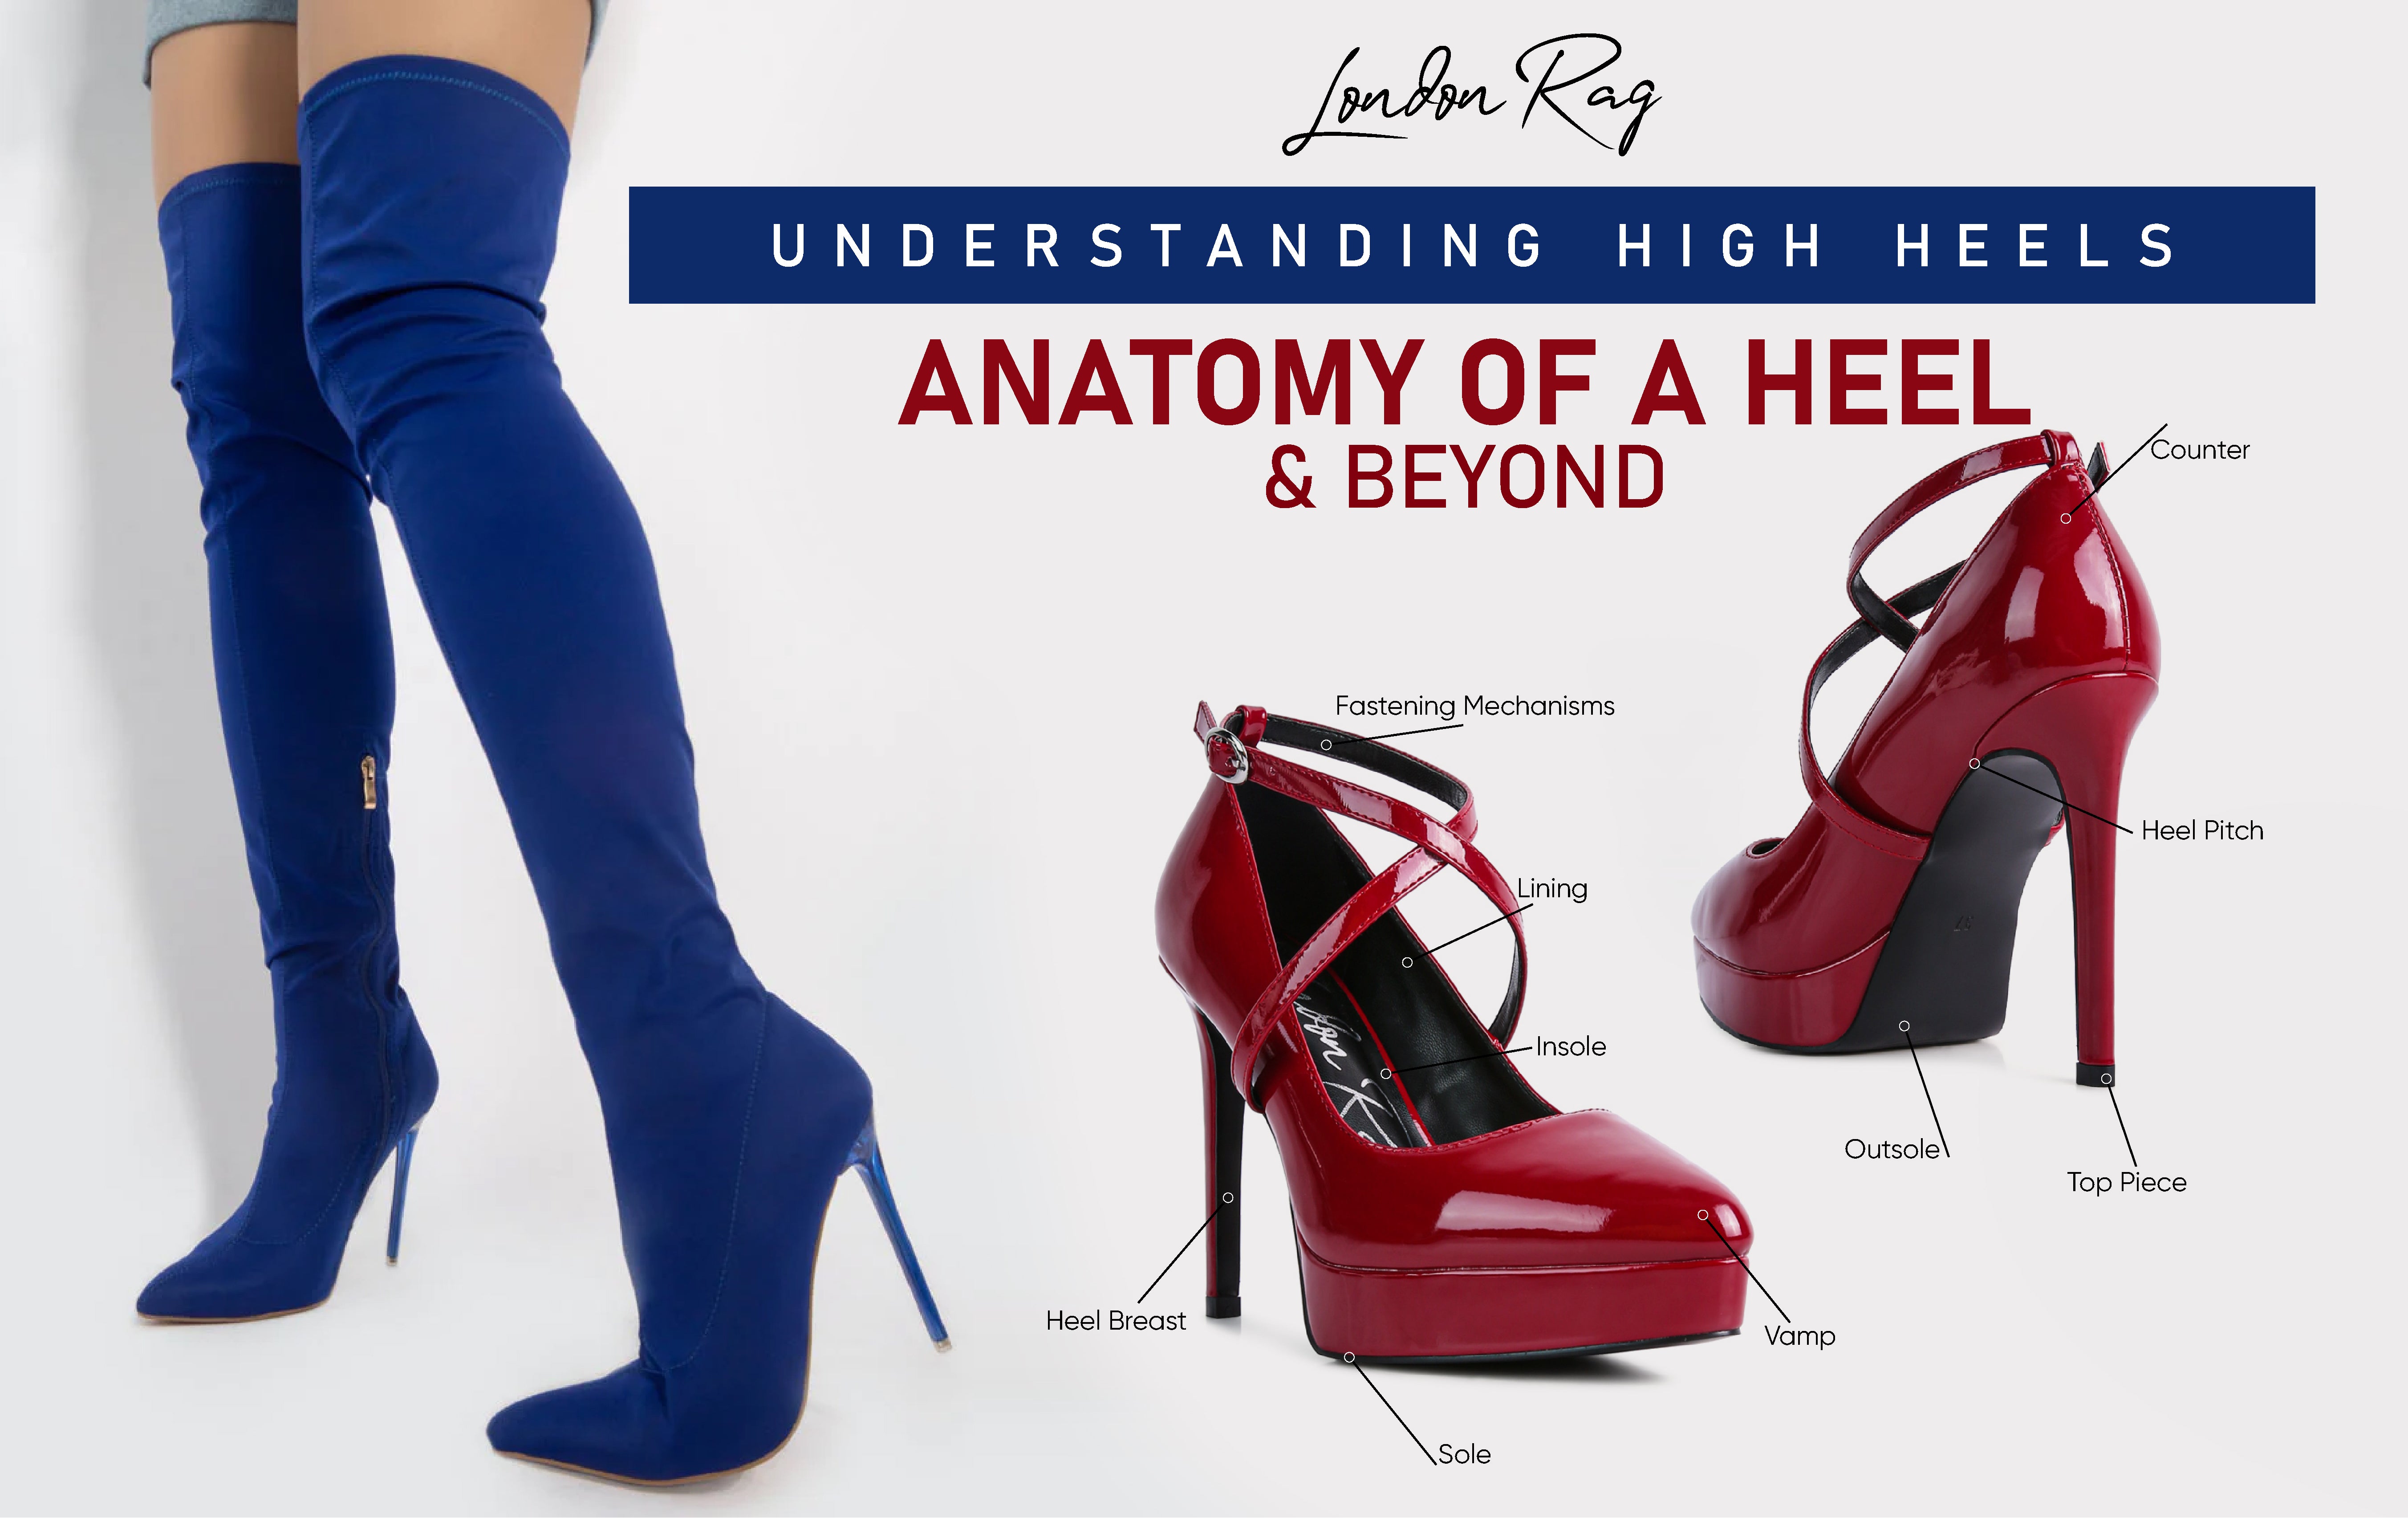 理解高跟鞋揭示了腳跟及以後的解剖結構